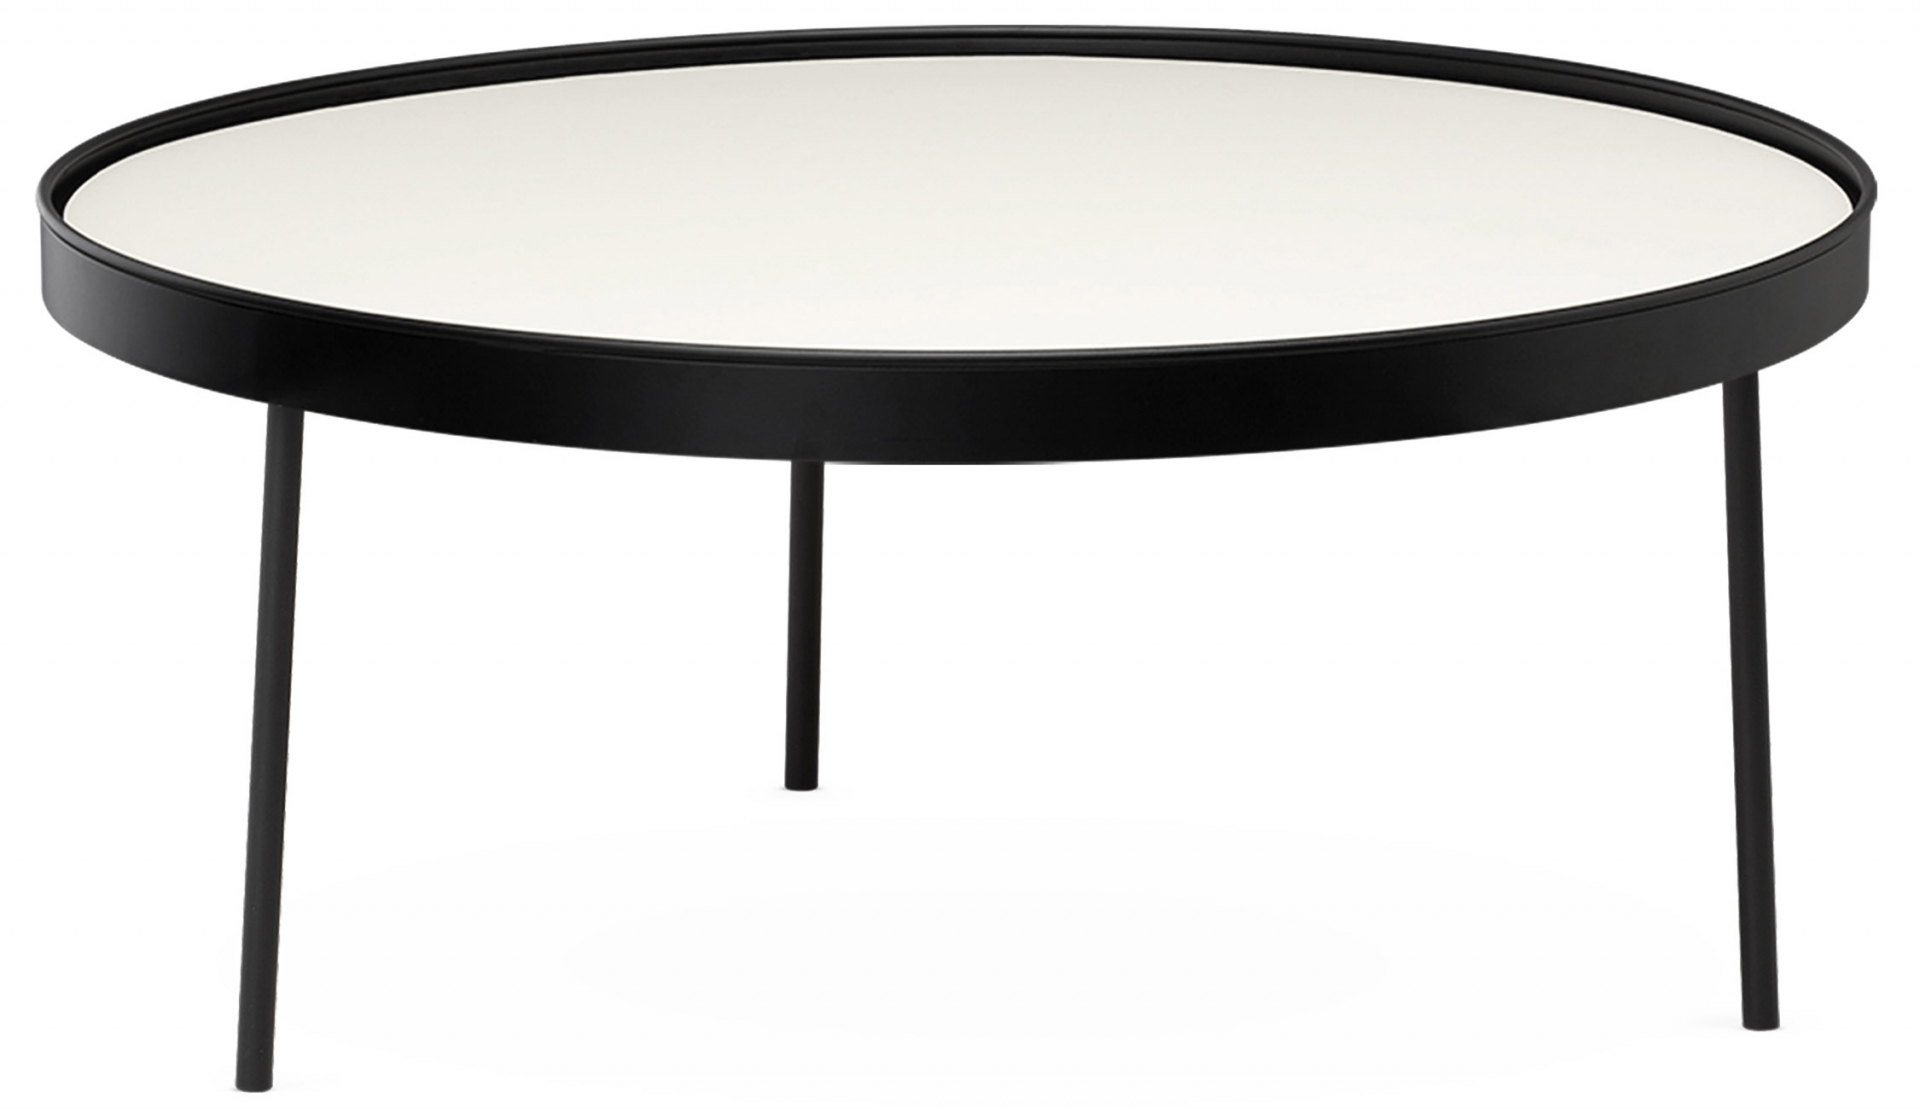 Northern designové konferenční stoly Stilk (průměr 74 cm)